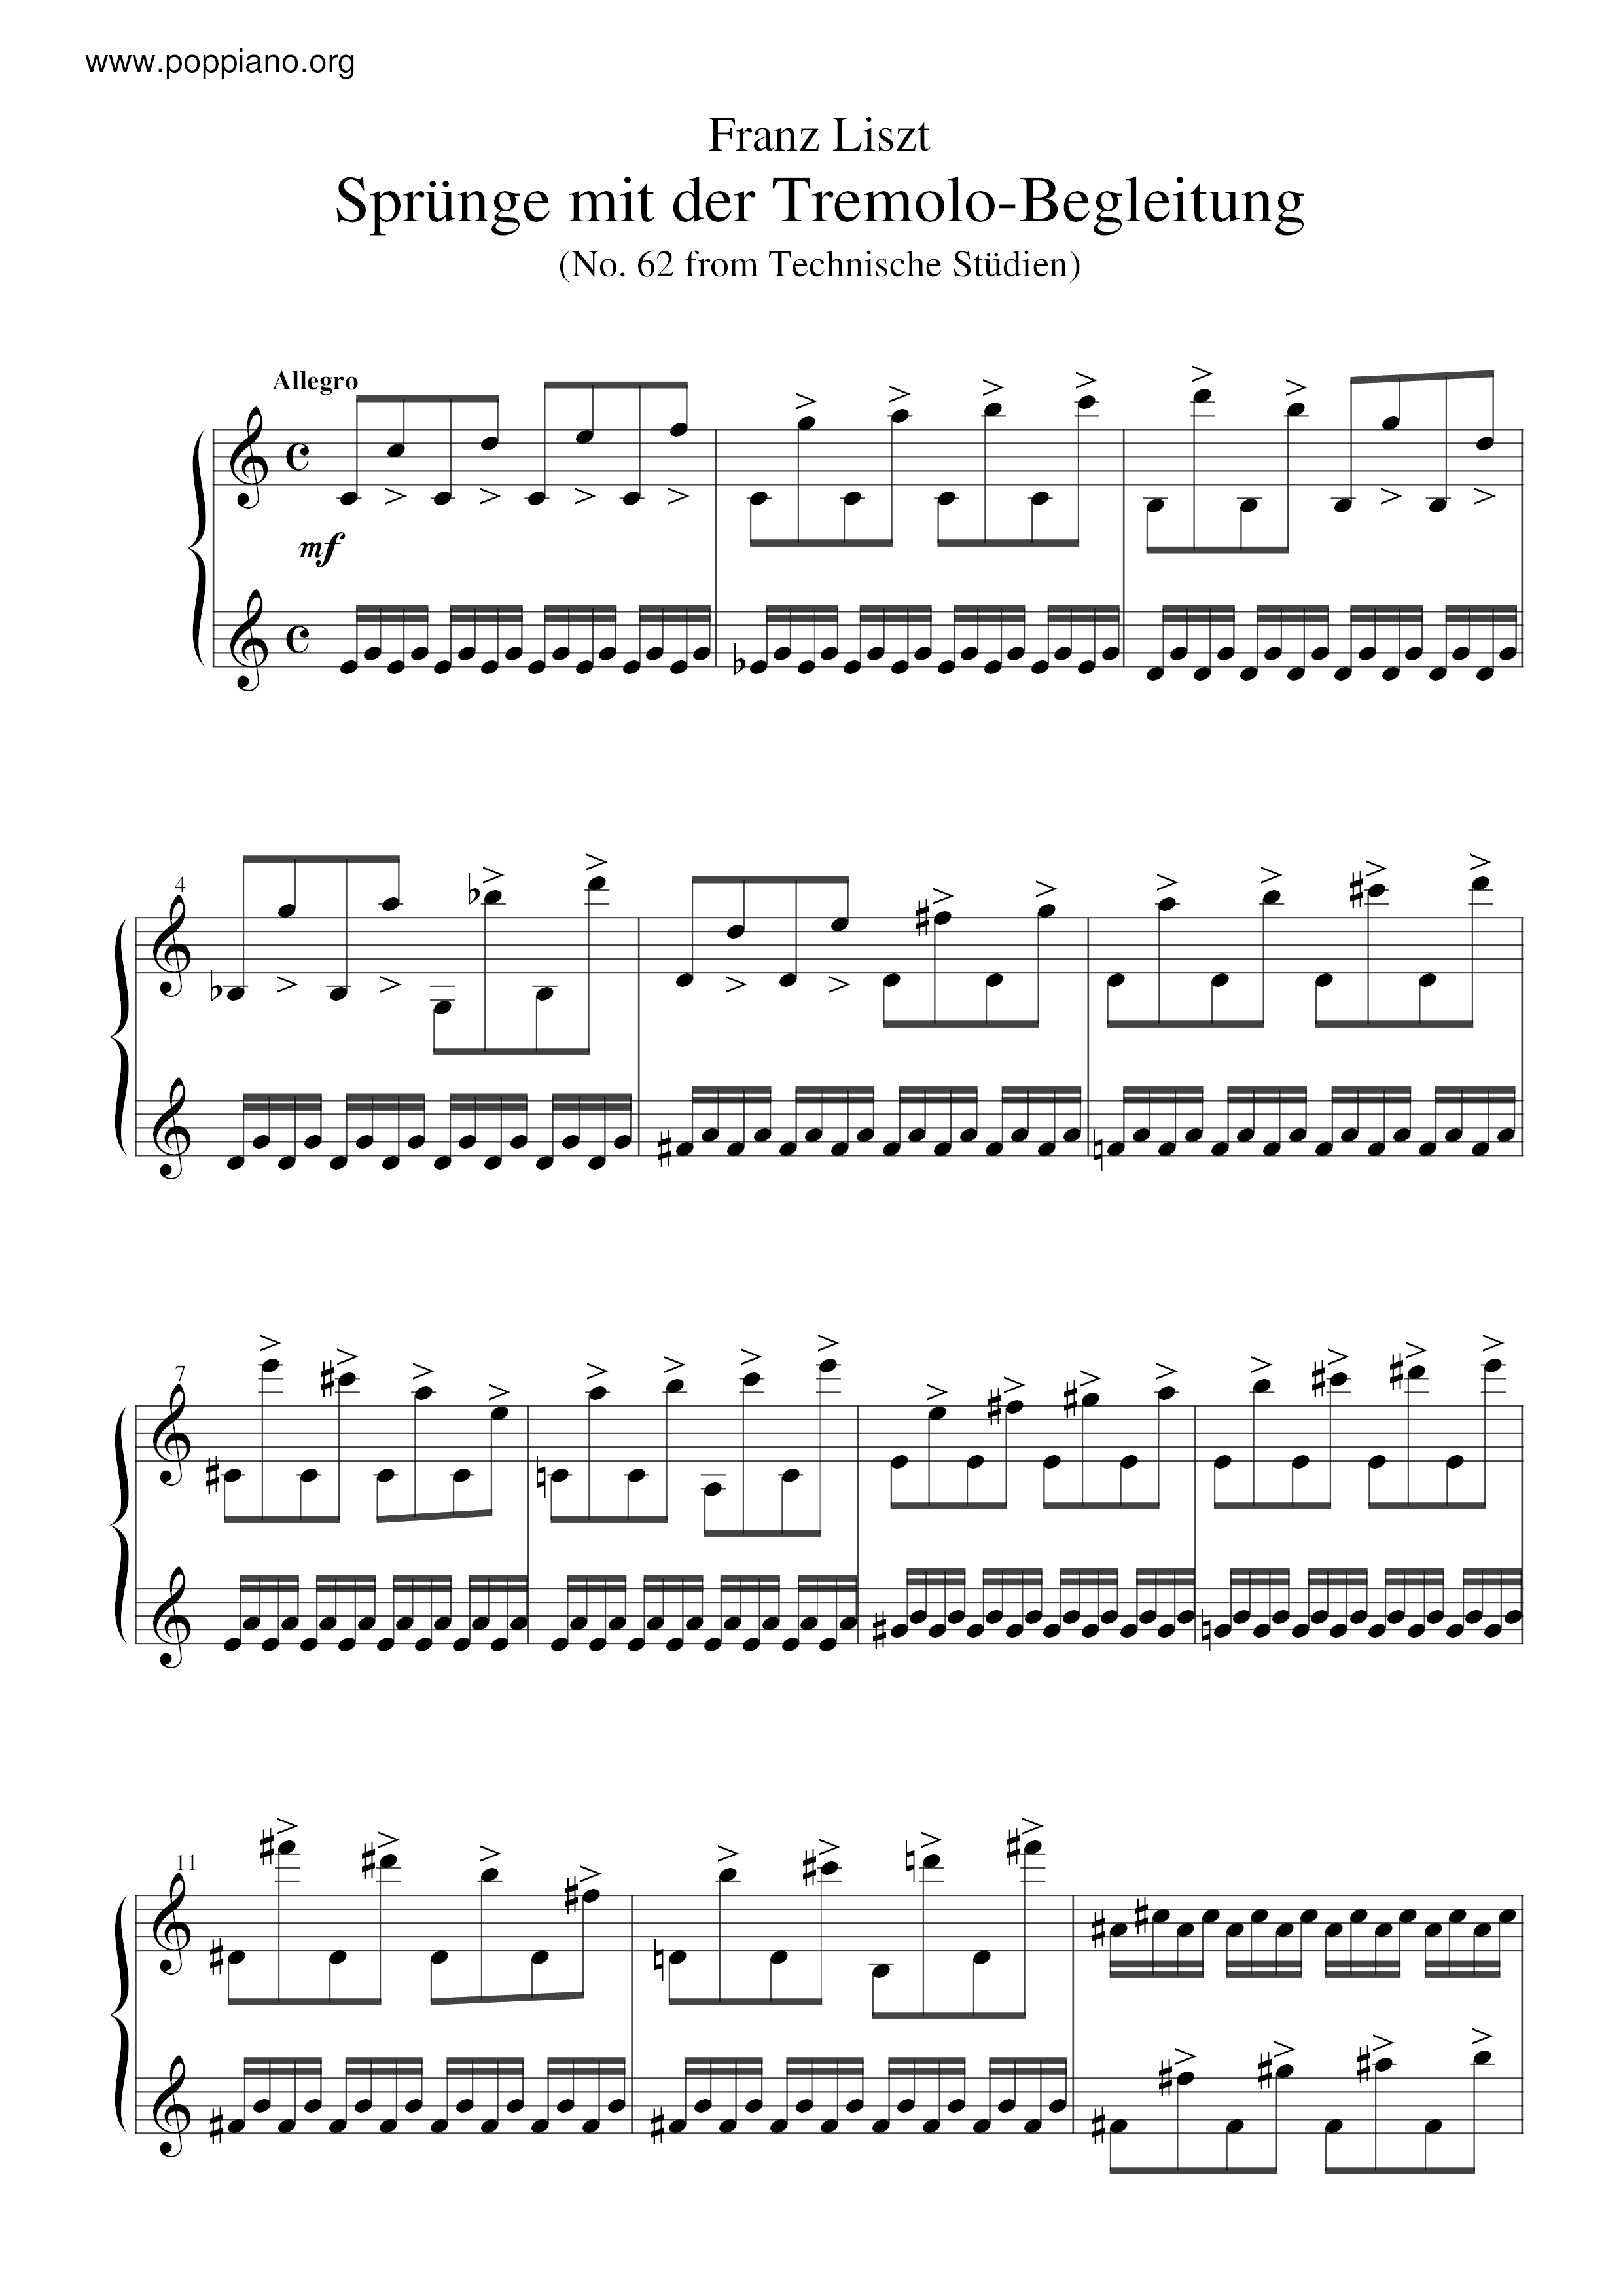 Sprunge mit der Tremolo-Begleitung, S.146/62 Score